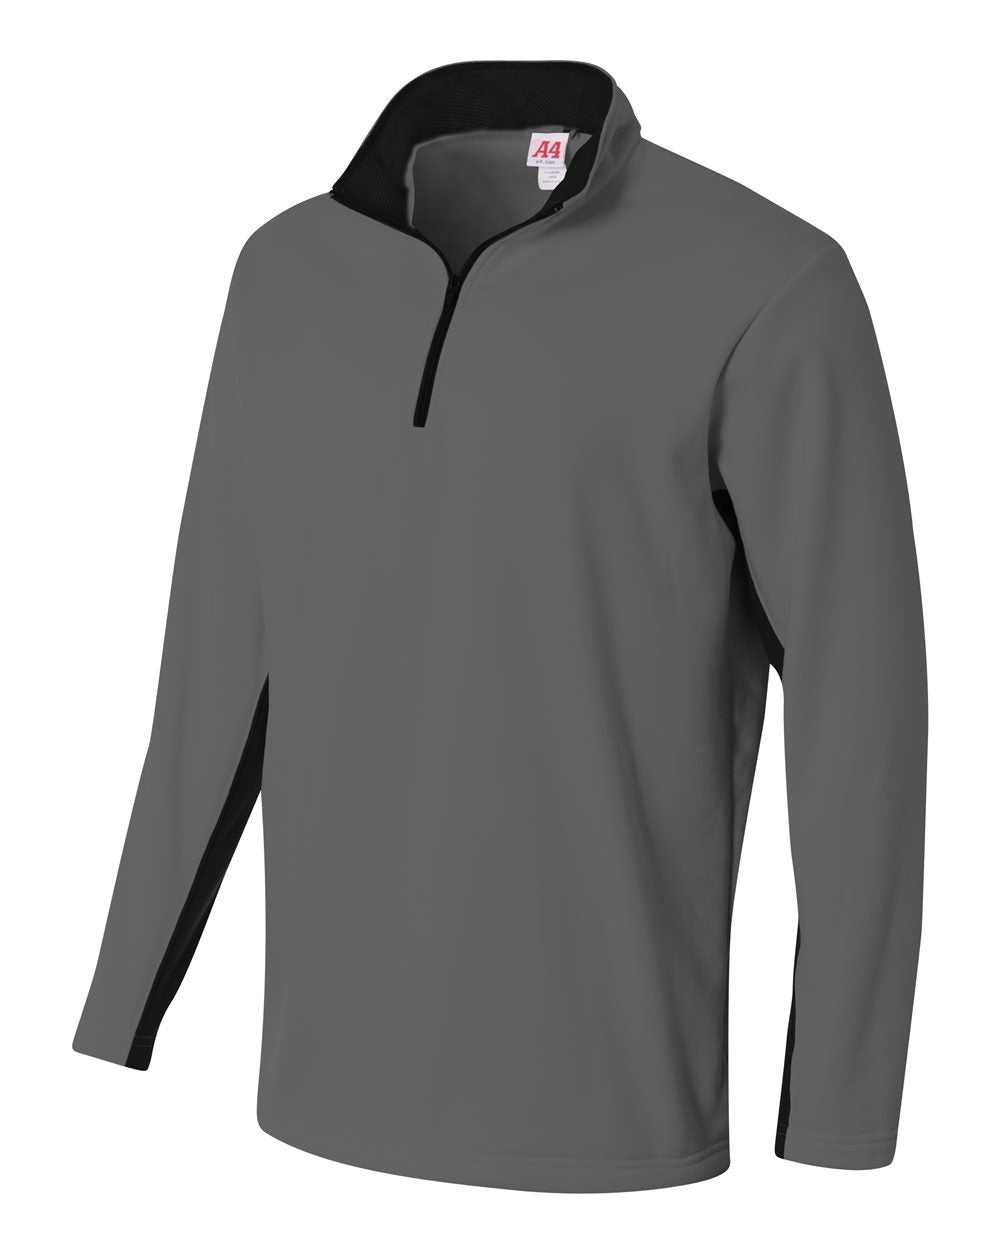 A4 N4246 1/4 Zip Color Block Fleece Jacket - Graphite Black - HIT a Double